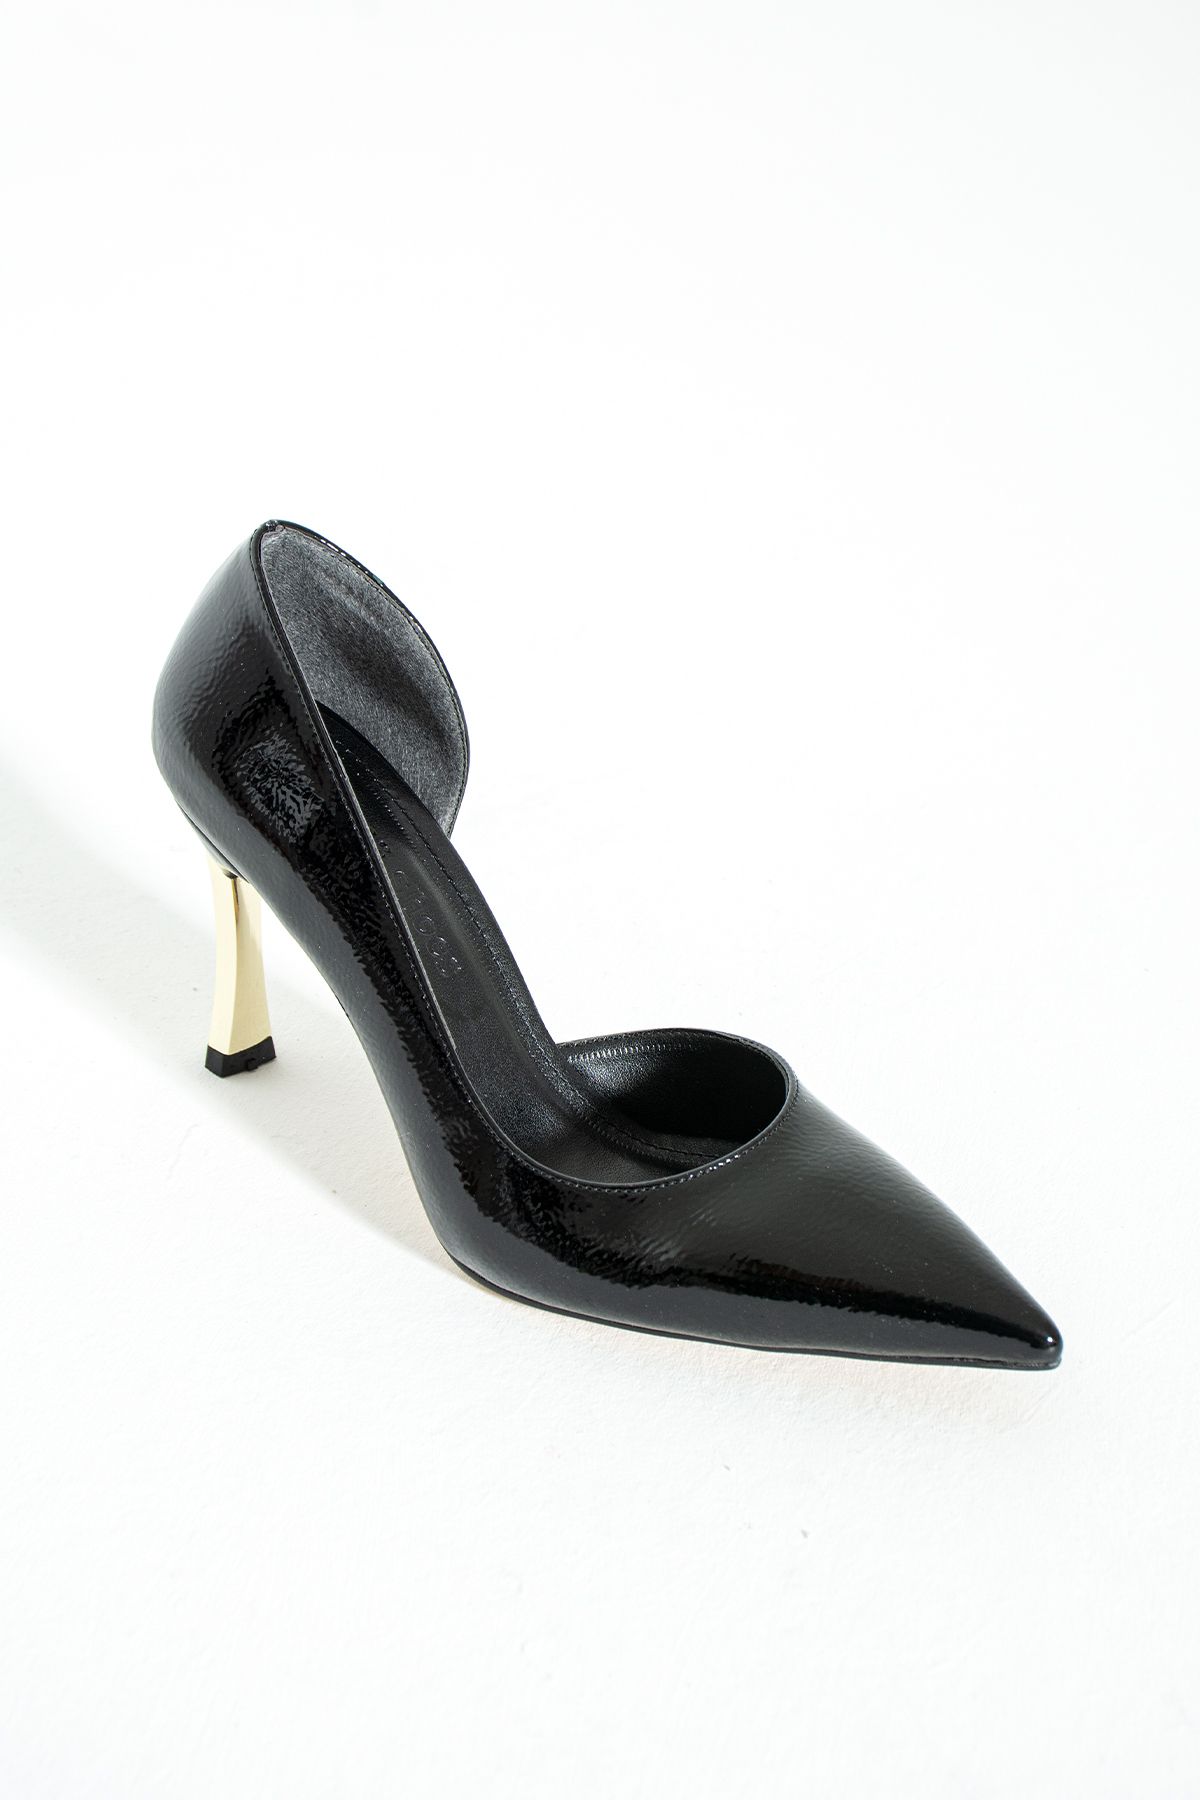 Güllü Shoes Kadın Topuklu Ayakkabı - Yüksek Topuklu Stiletto Rahat Şık Ve Ince Iş Ayakkabısı Siyah Rengi 9 Cm